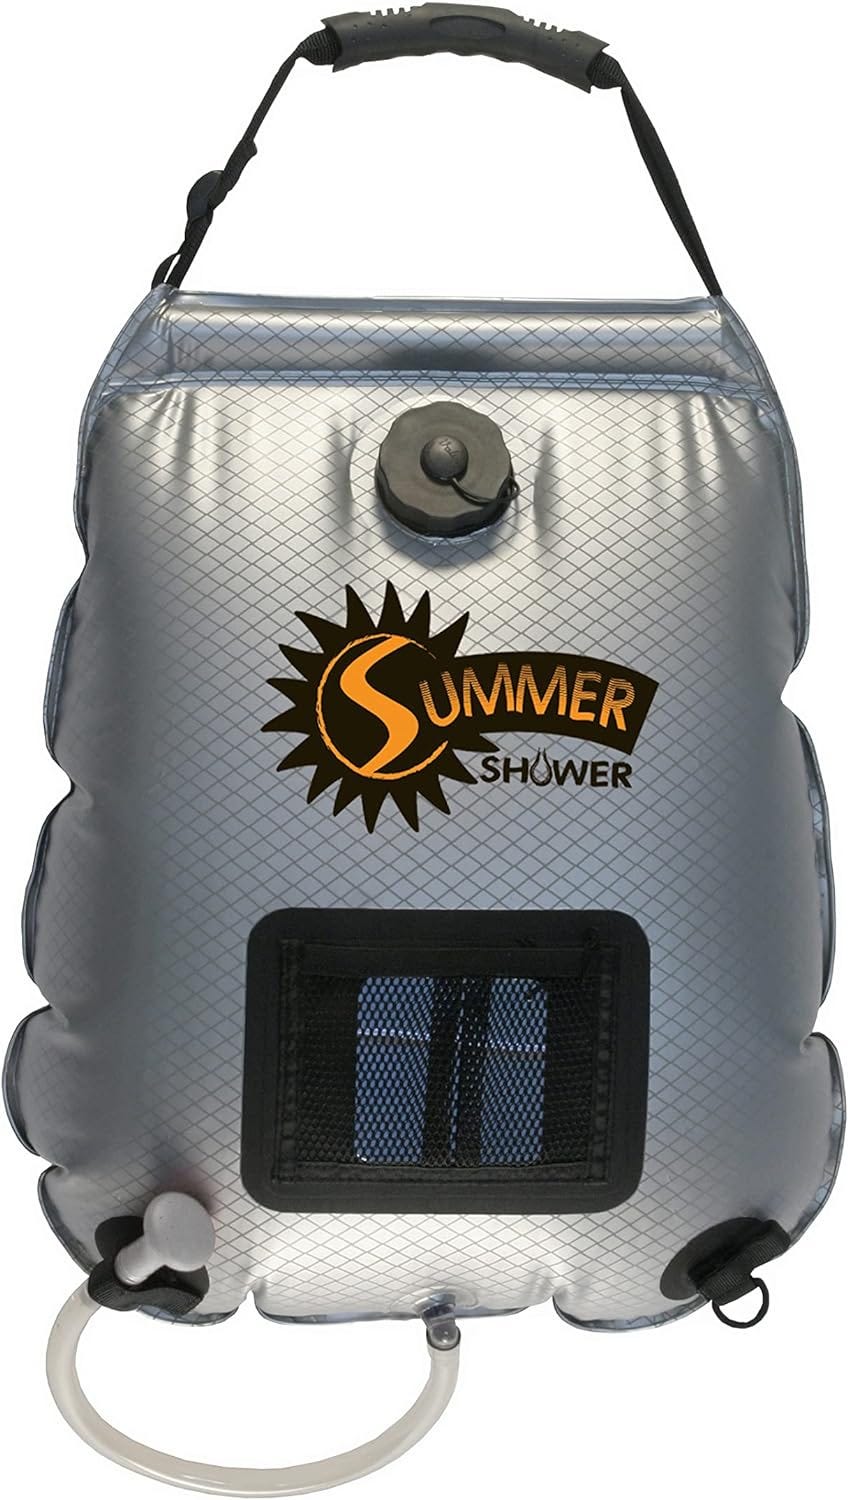 Portable campervan shower